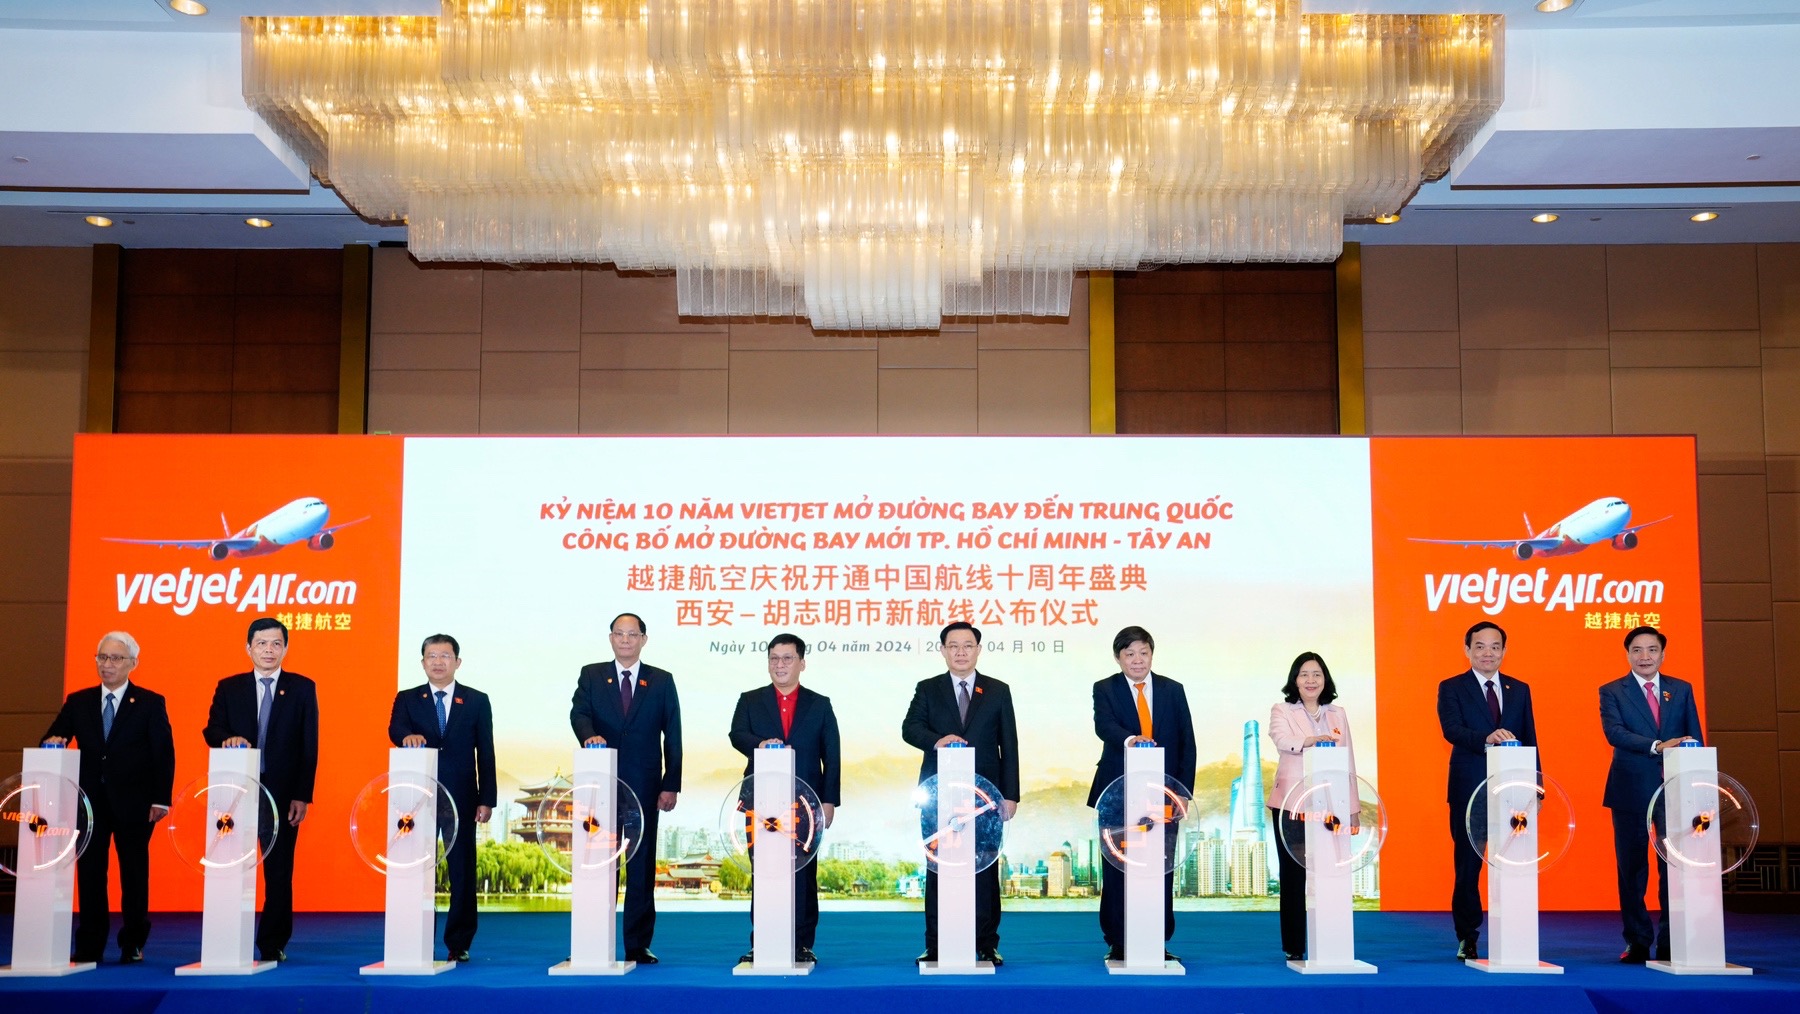 Nghi thức công bố đường bay mới TP Hồ Chí Minh - Tây An (Trung Quốc) của Vietjet